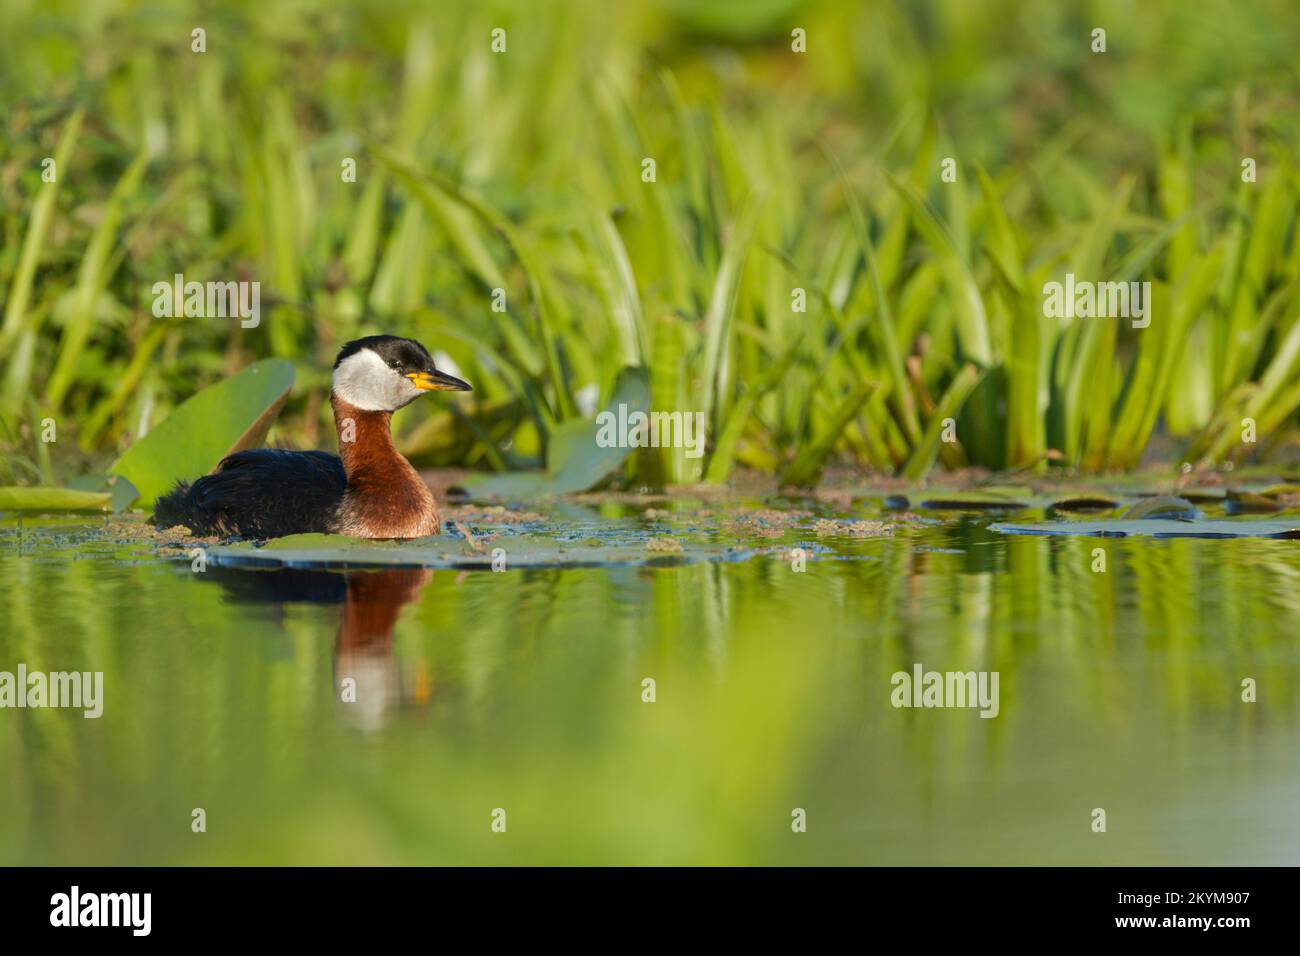 Verde dal collo rosso, Podiceps grisegena, in estate allevamento piumaggio nuoto in acque calme con canne dietro Foto Stock